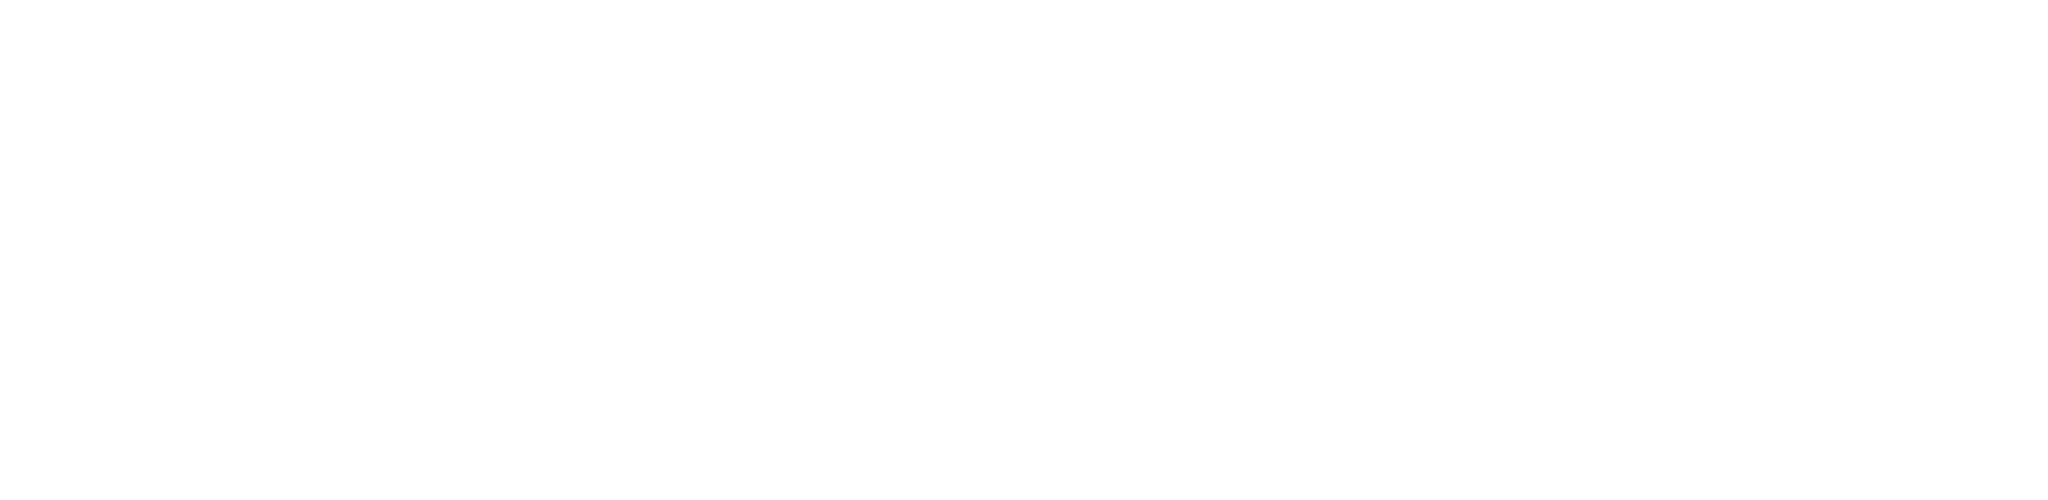 Votta Design Company